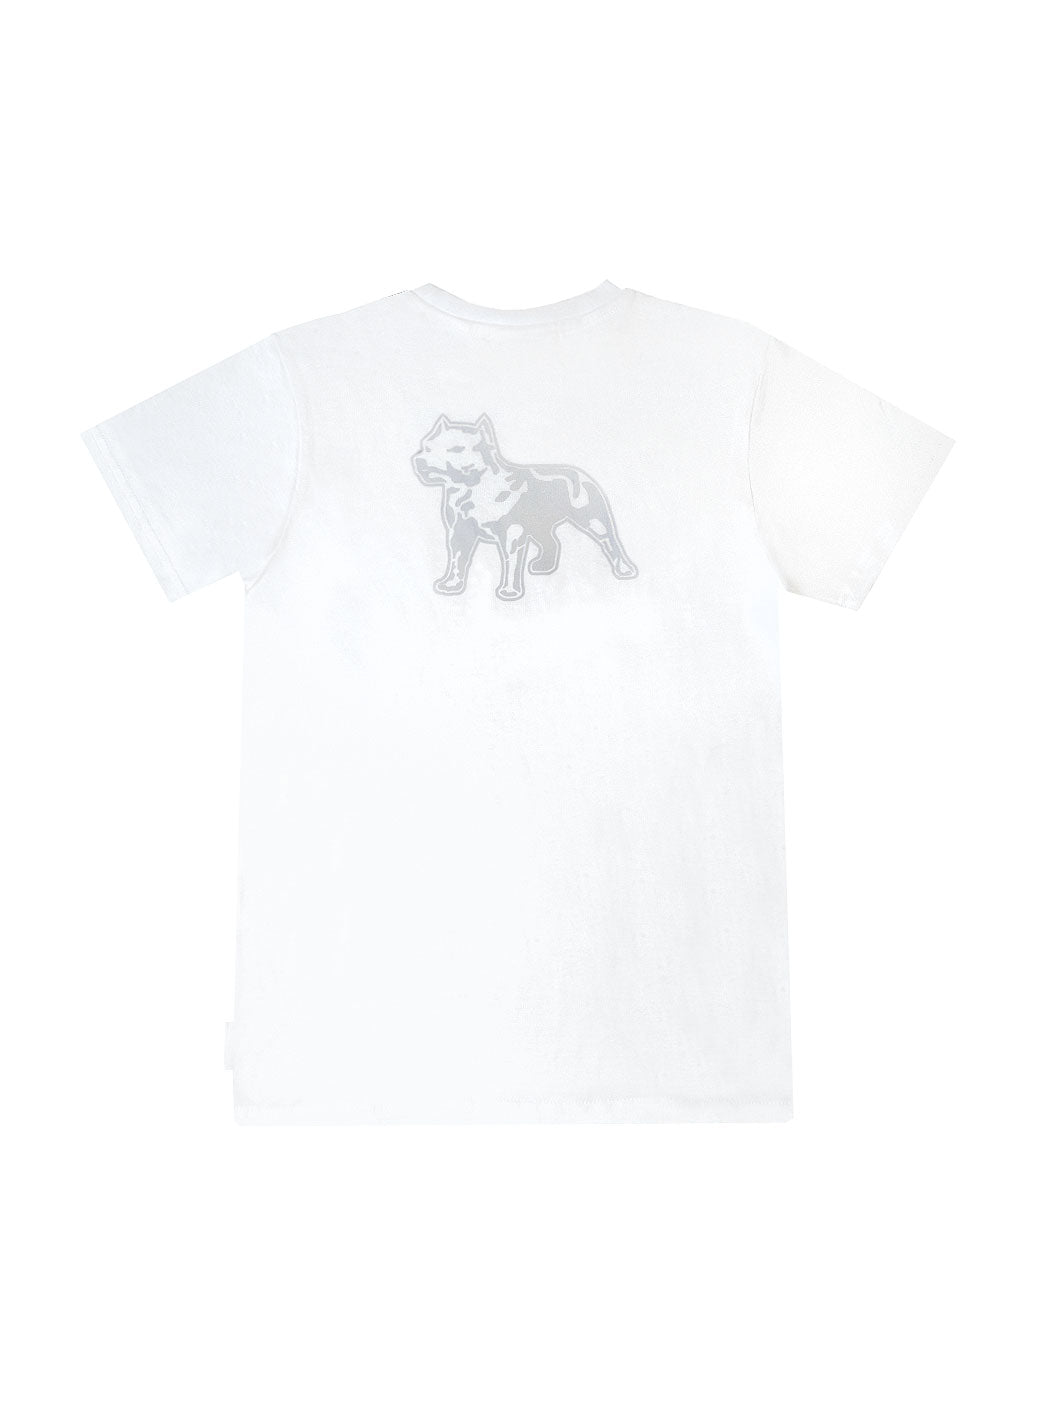 Amstaff Kids Tayson T-Shirt weiß - 13